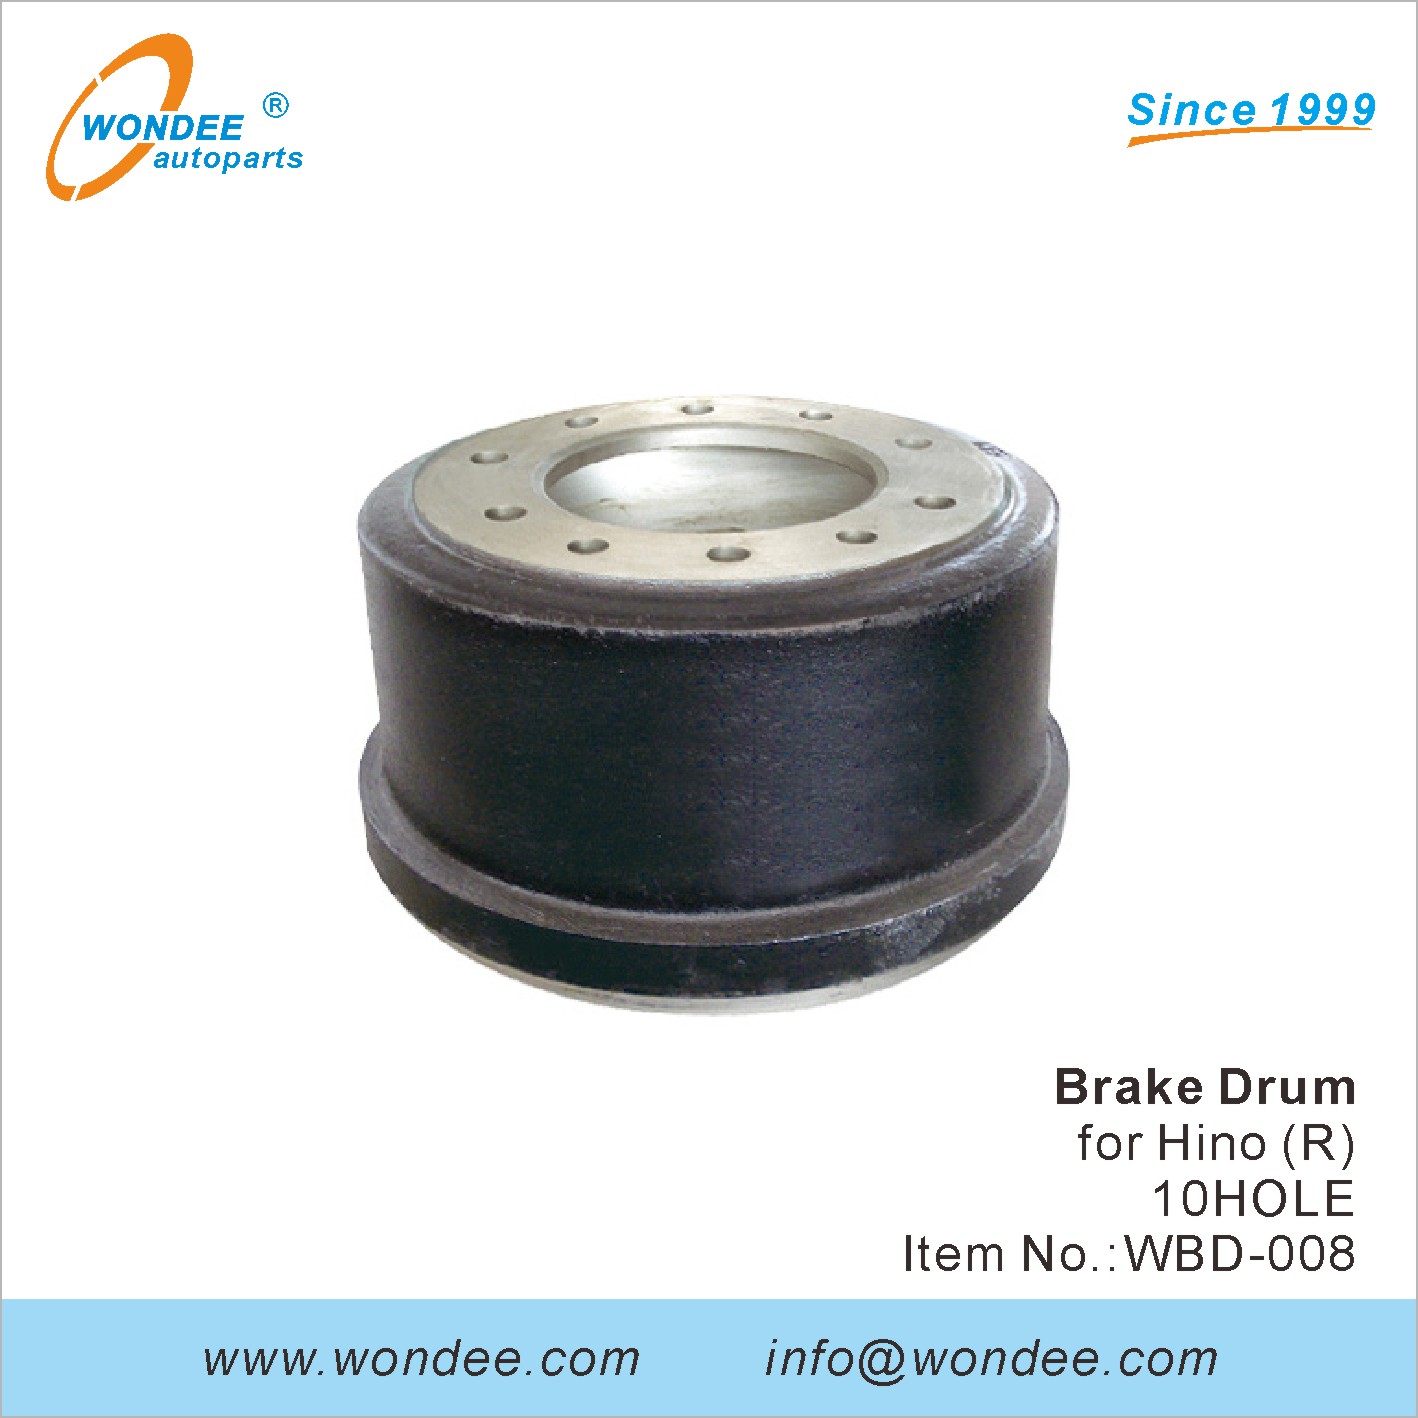 WONDEE brake drum (8)